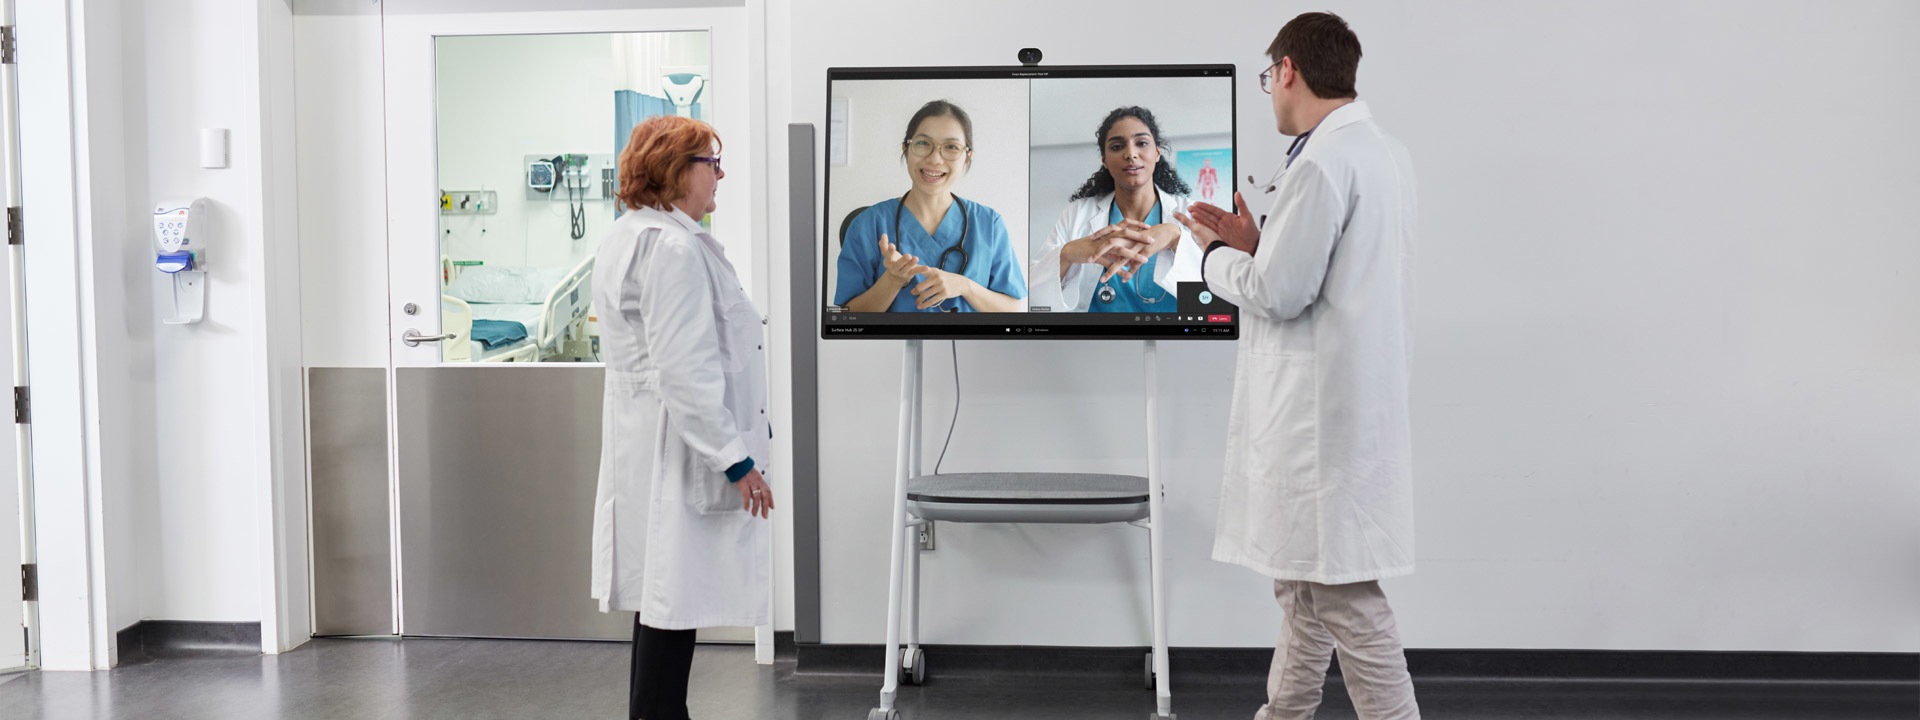 Δύο επαγγελματίες υγείας συμμετέχουν σε μια βιντεοκλήση στο Teams σε περιβάλλον νοσοκομείου